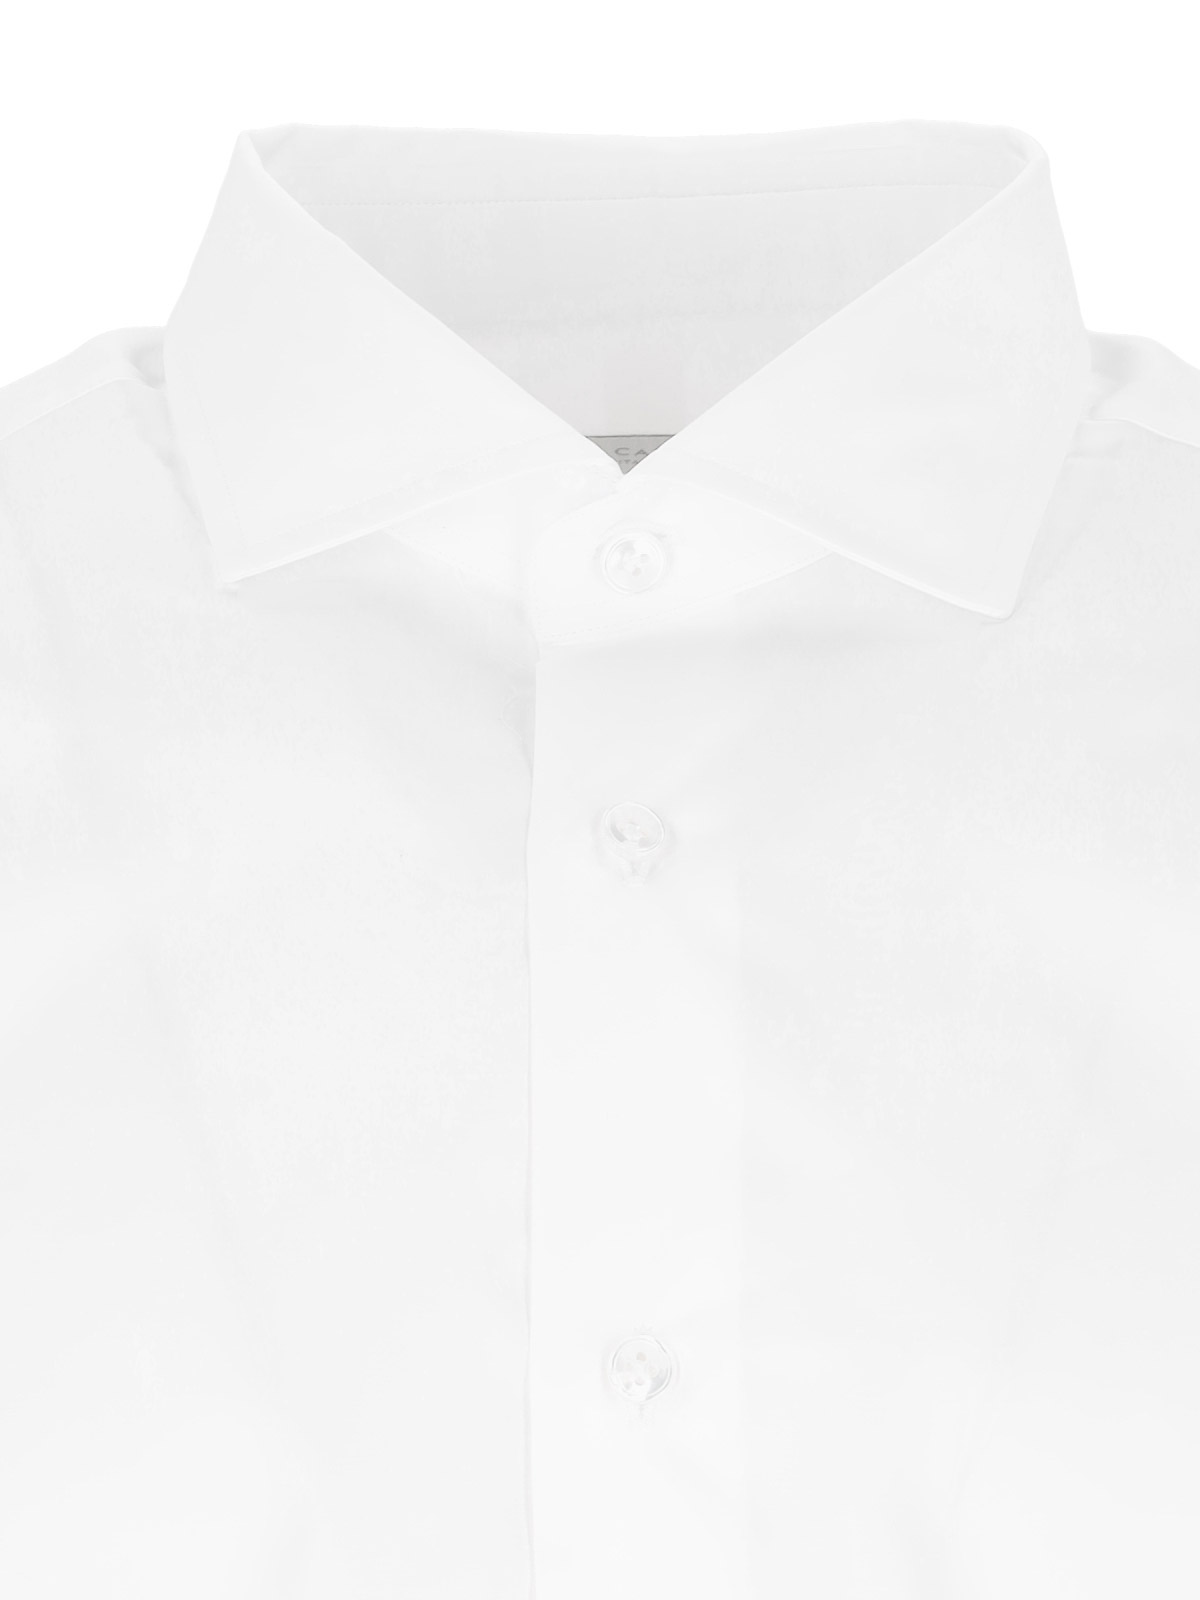 Shop Laboratorio Del Carmine Camisa - Blanco In White